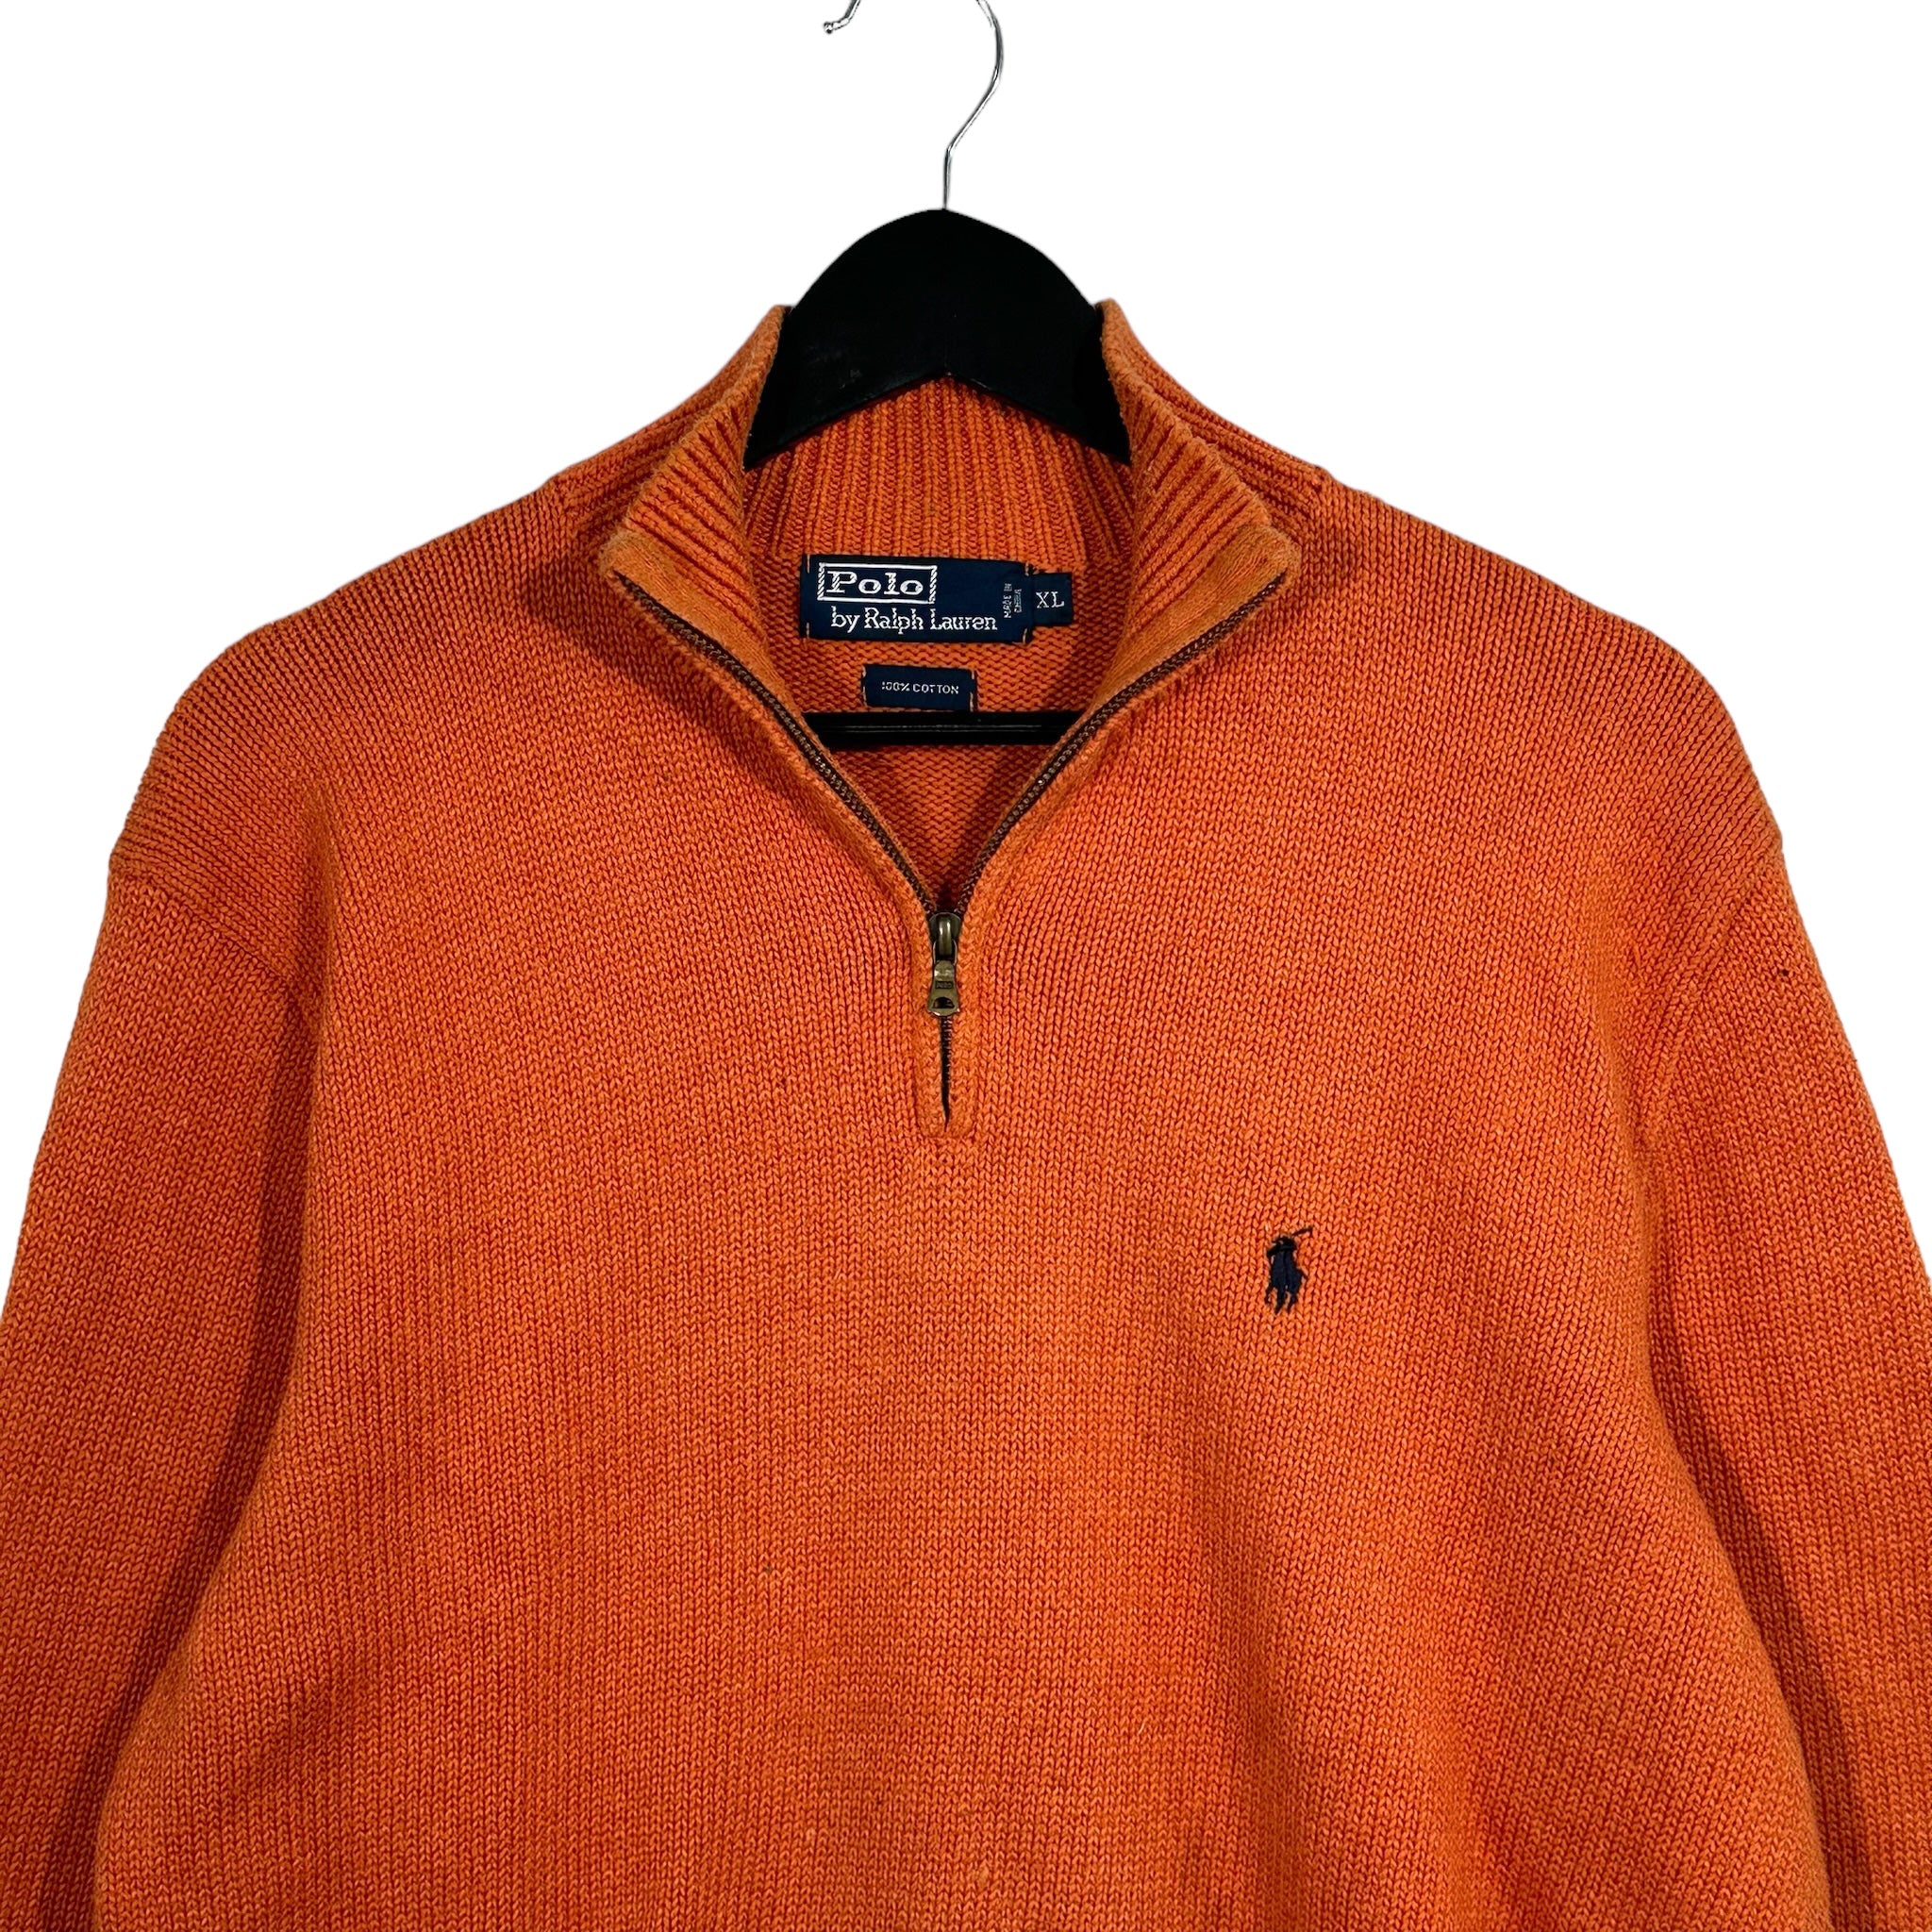 Vintage Polo Ralph Lauren 1/4 Zip Sweater